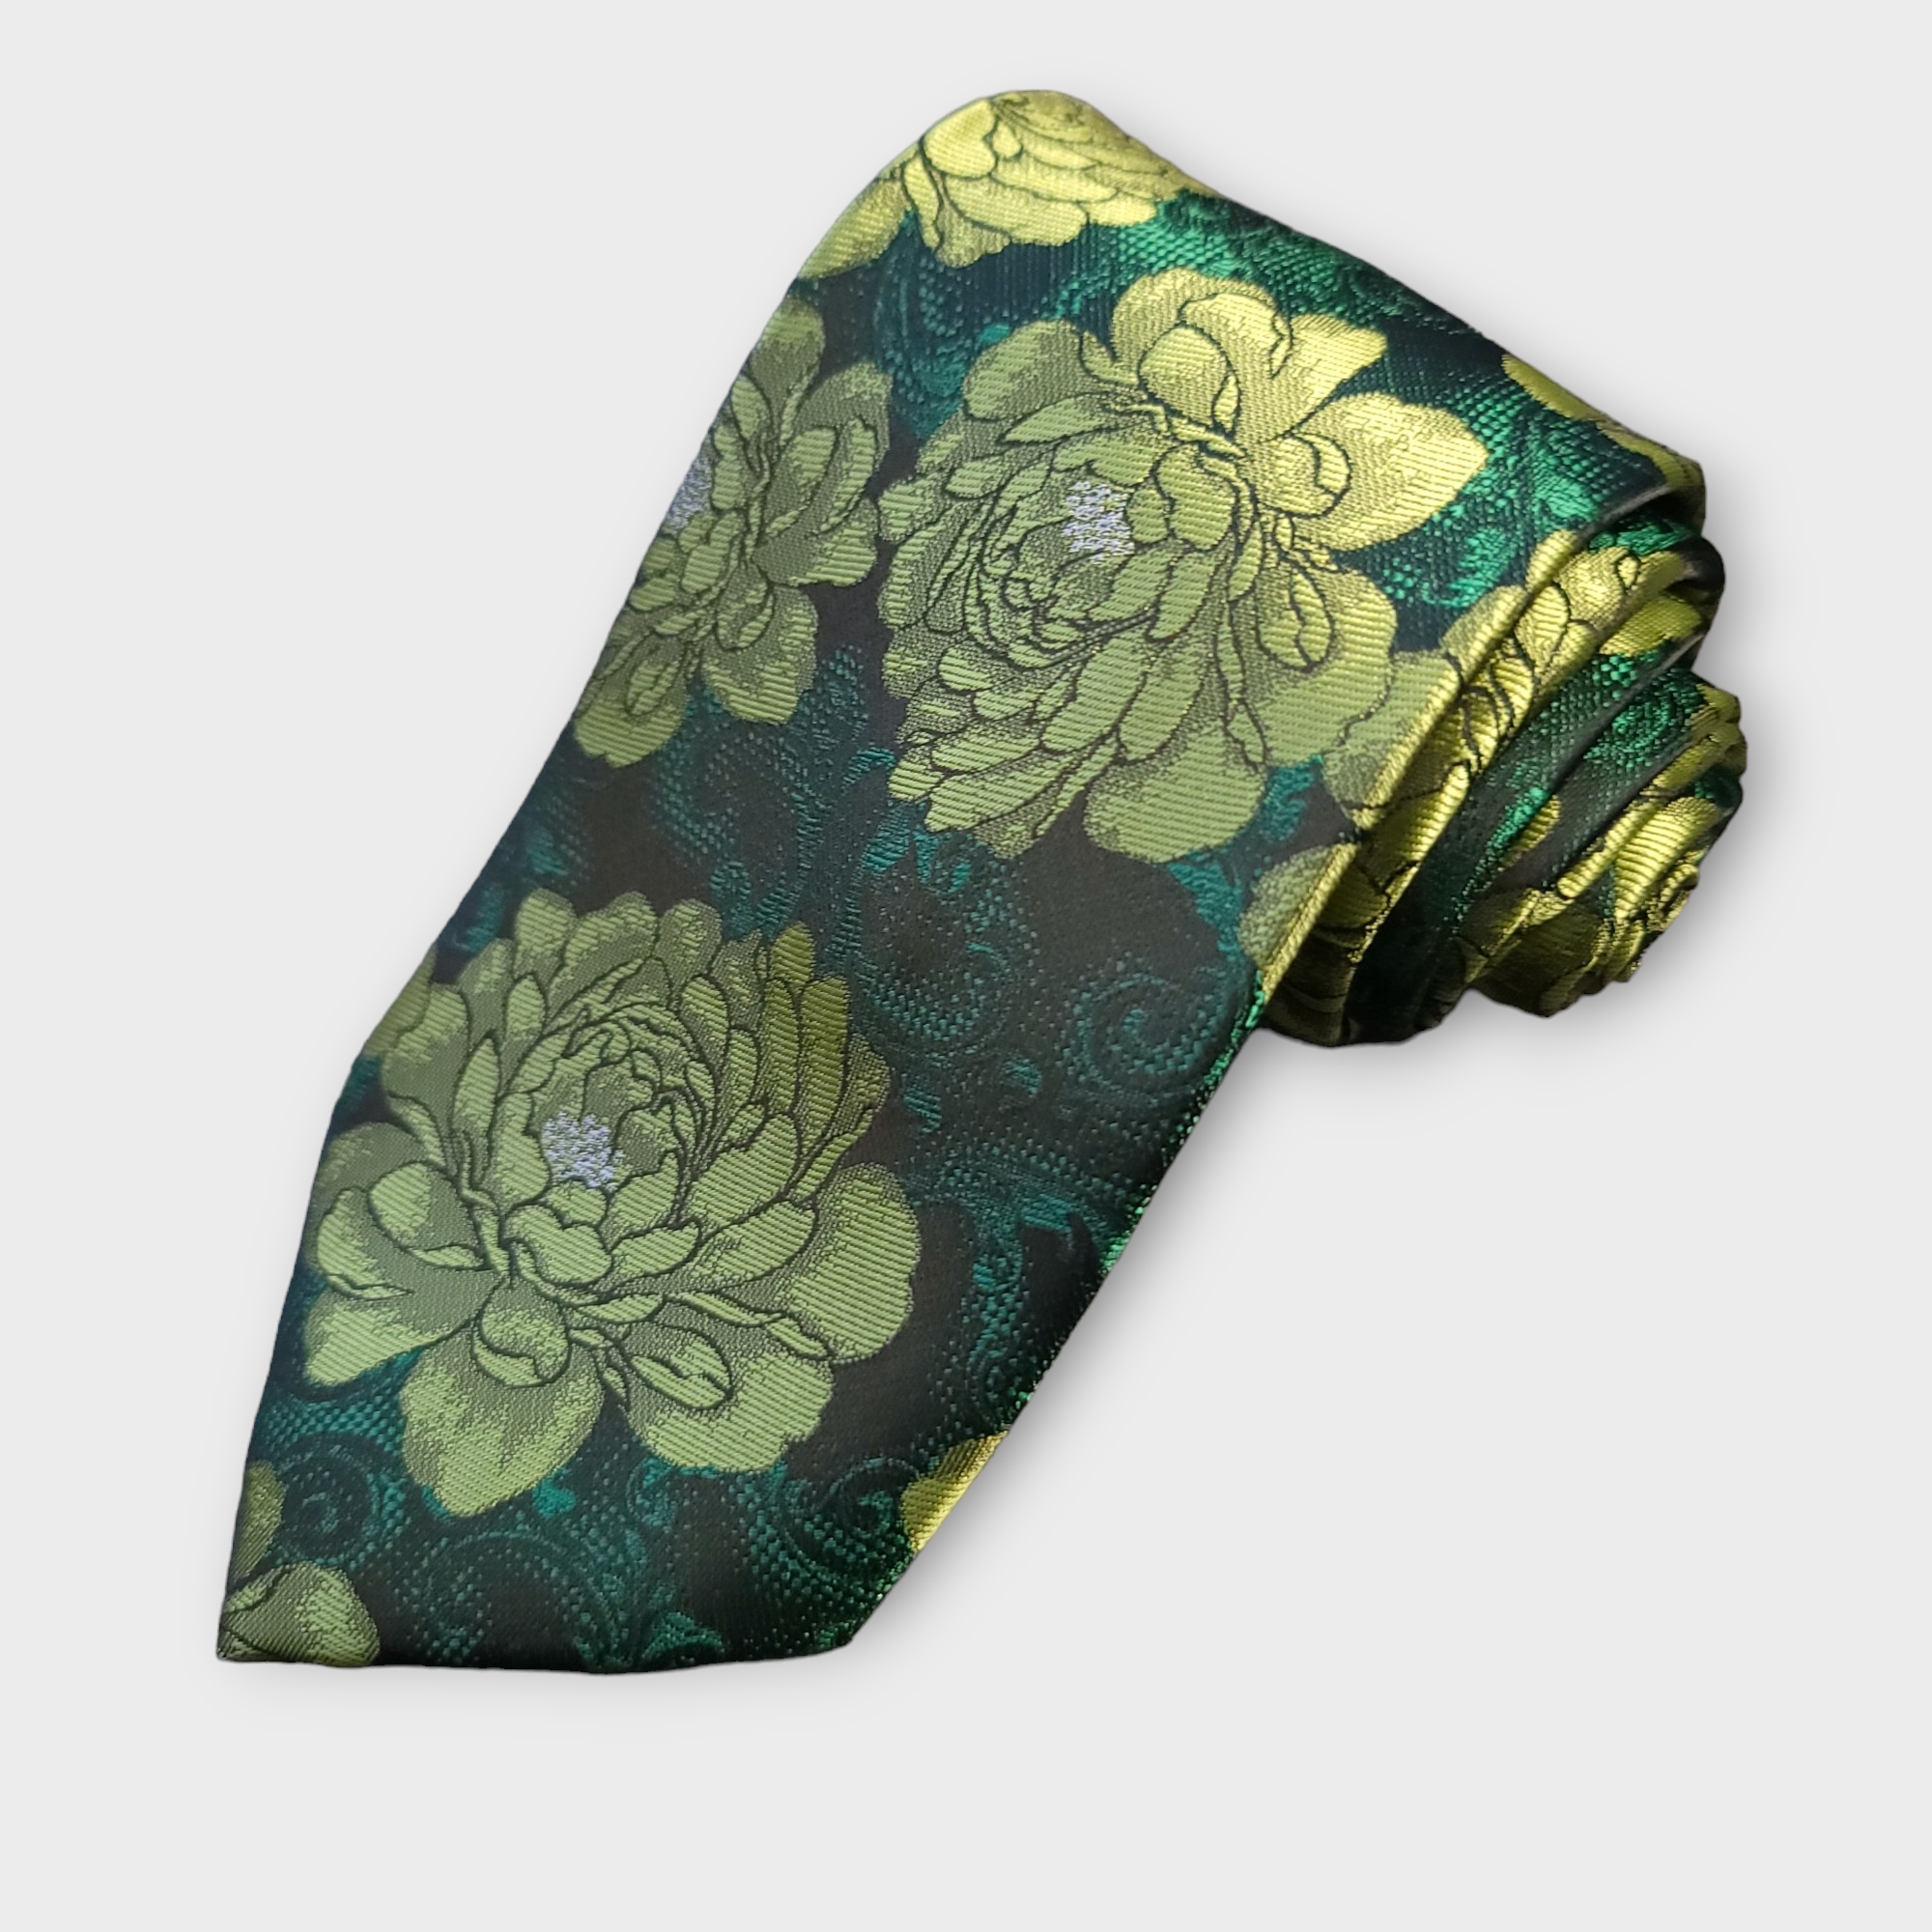 Green Floral Silk Tie Pocket Square Cufflink Set